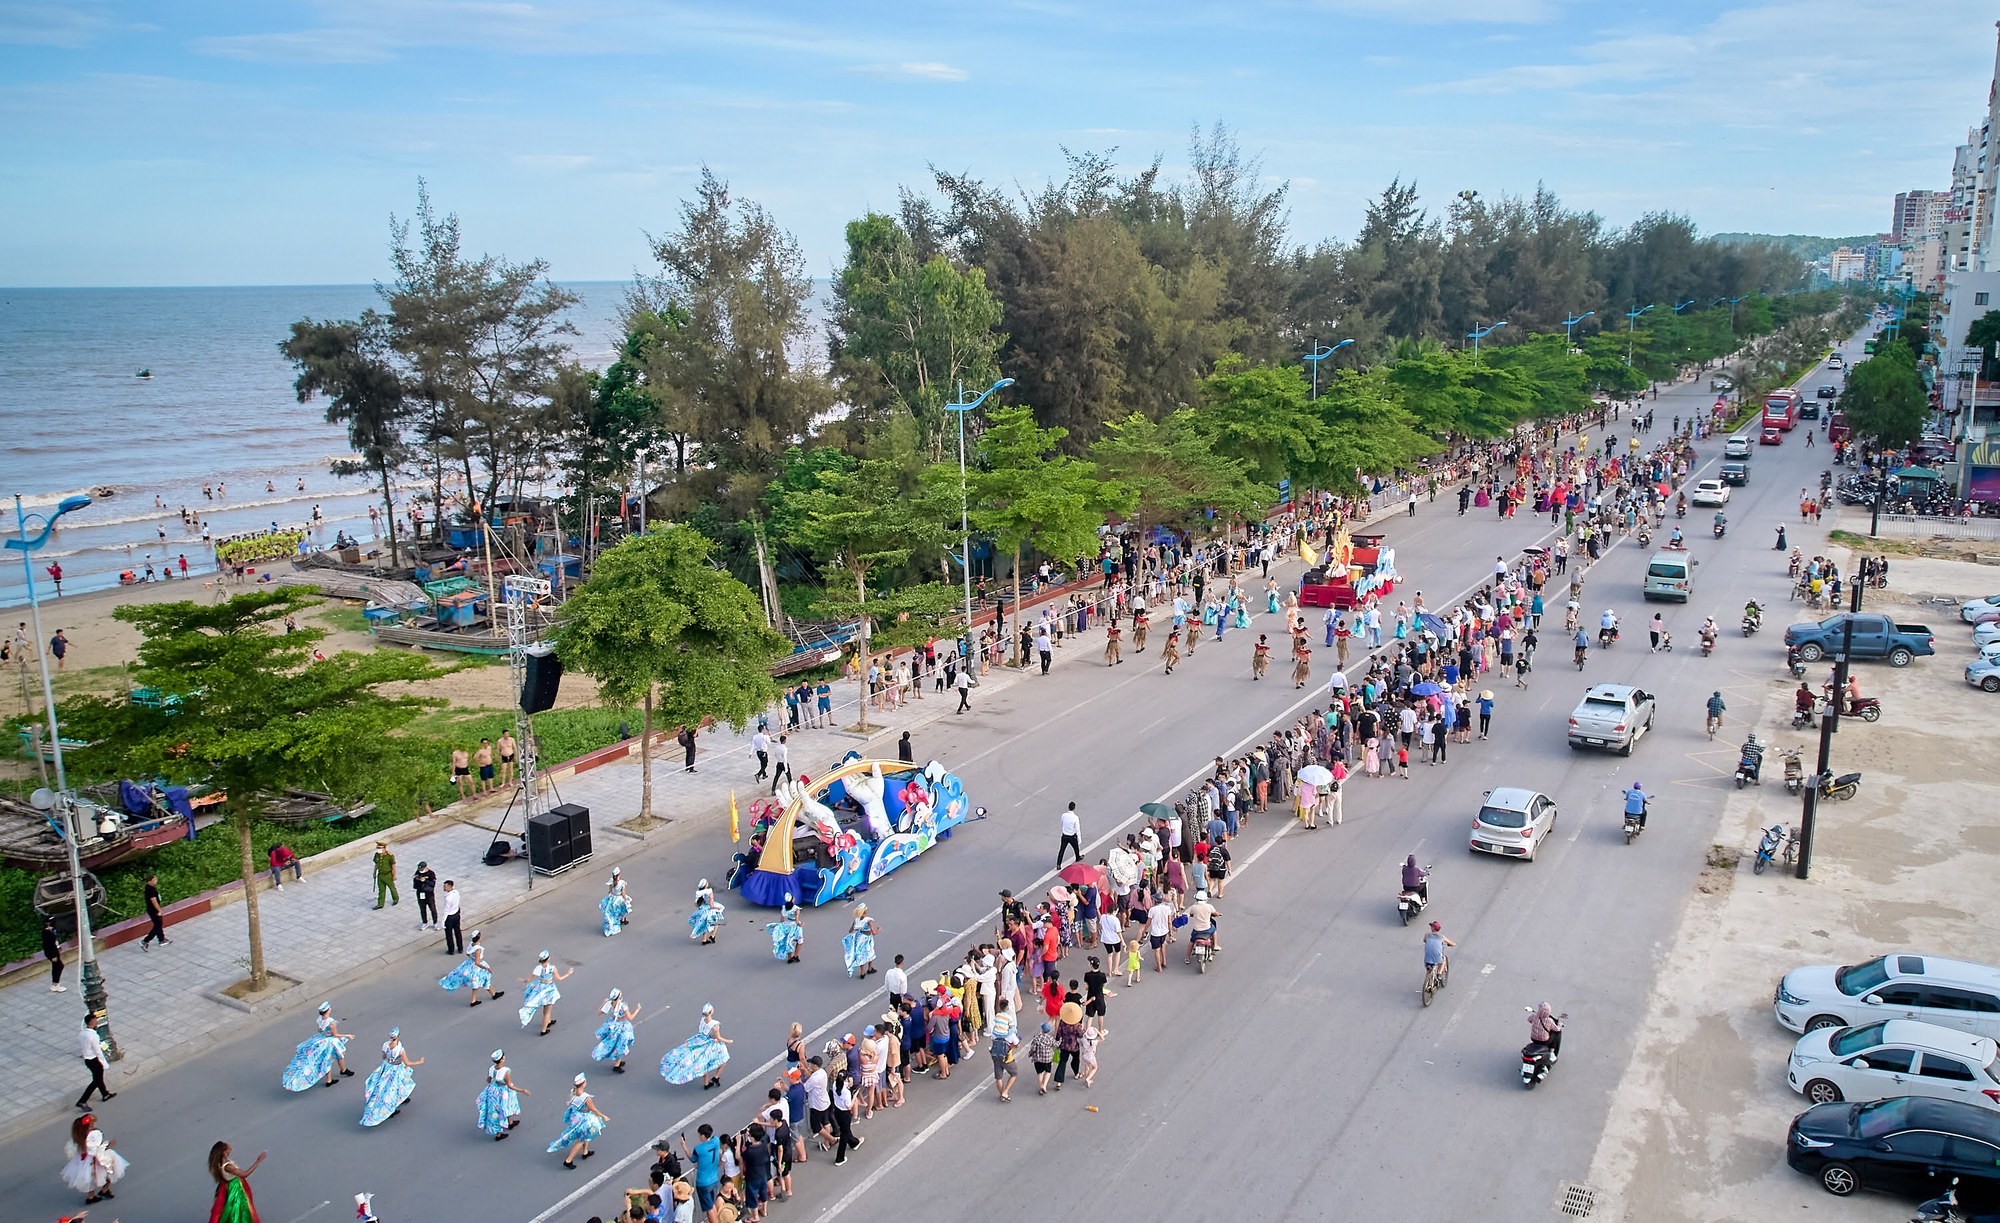 Du khách phấn khích với không khí Carnival rực rỡ sắc màu tại thành phố biển Sầm Sơn - Ảnh 1.